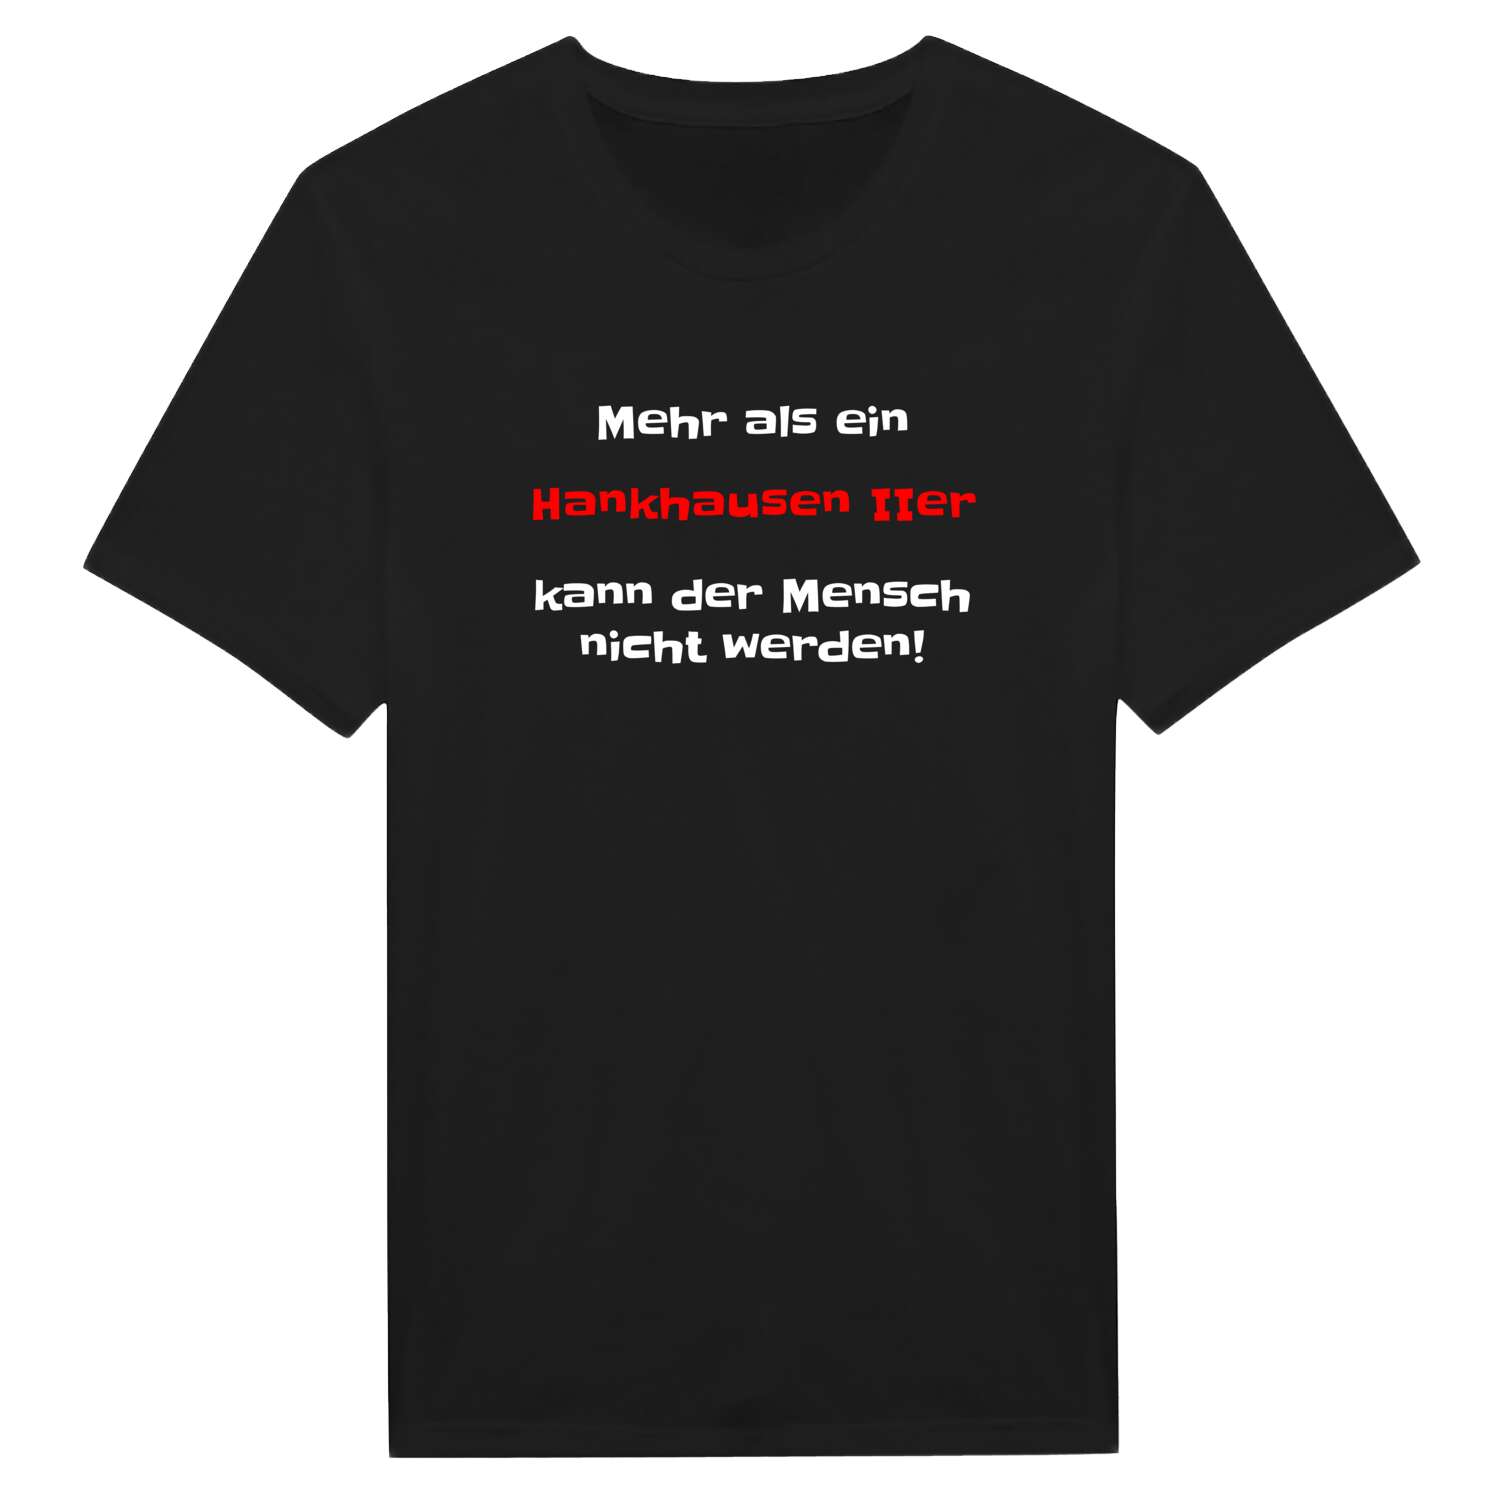 Hankhausen II T-Shirt »Mehr als ein«